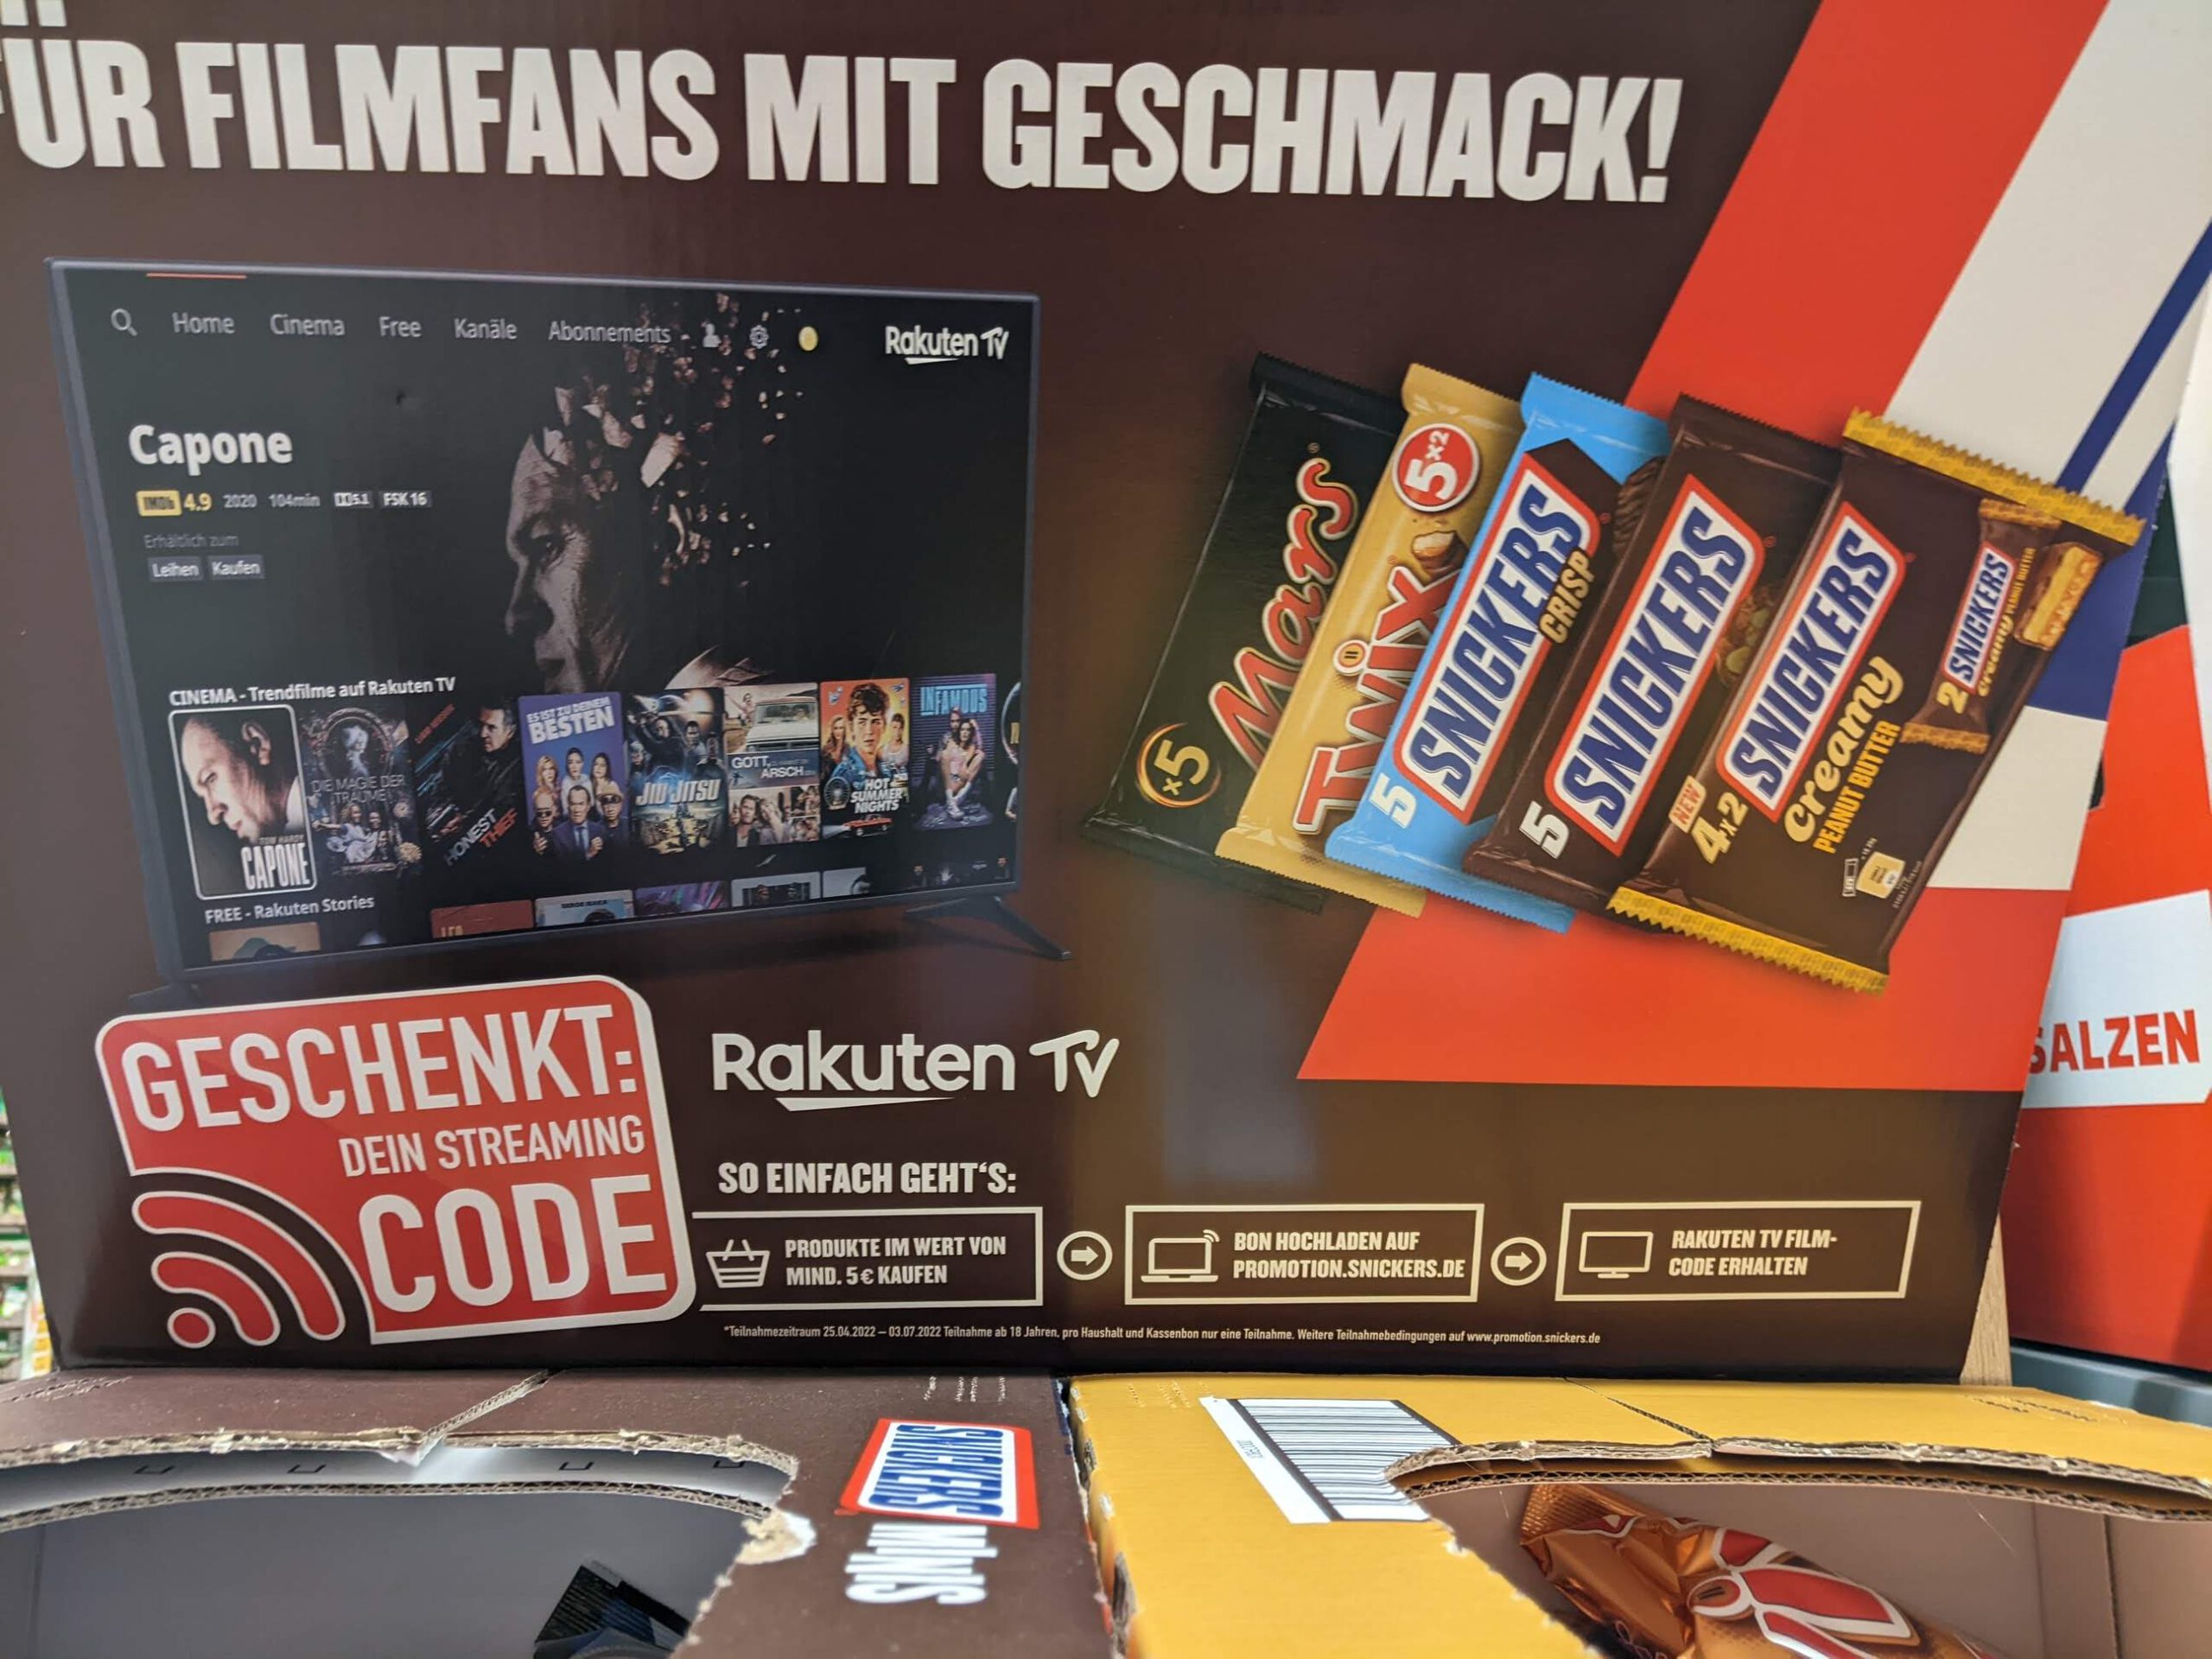 Mars, Snickers, M&Ms, Bounty, Twix, Milky-Way, Maltesers für 5 Euro kaufen - Streaming-Code gratis für Rakuten TV - Kassenbon hochladen